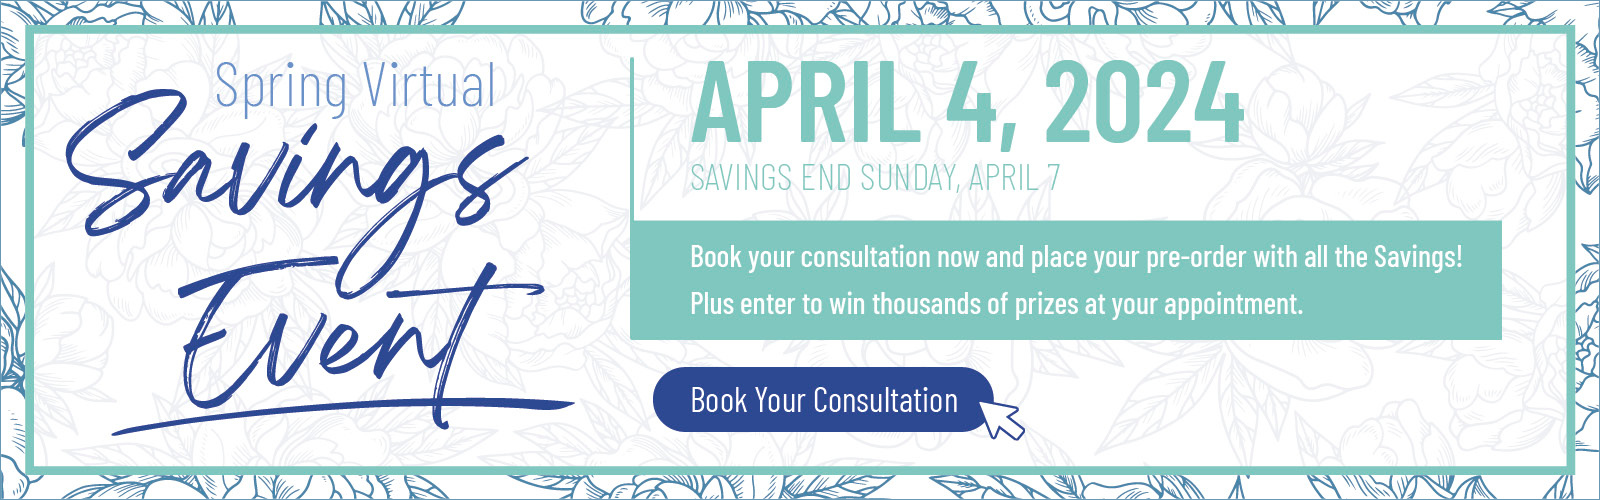 Spring Spa Savings Event